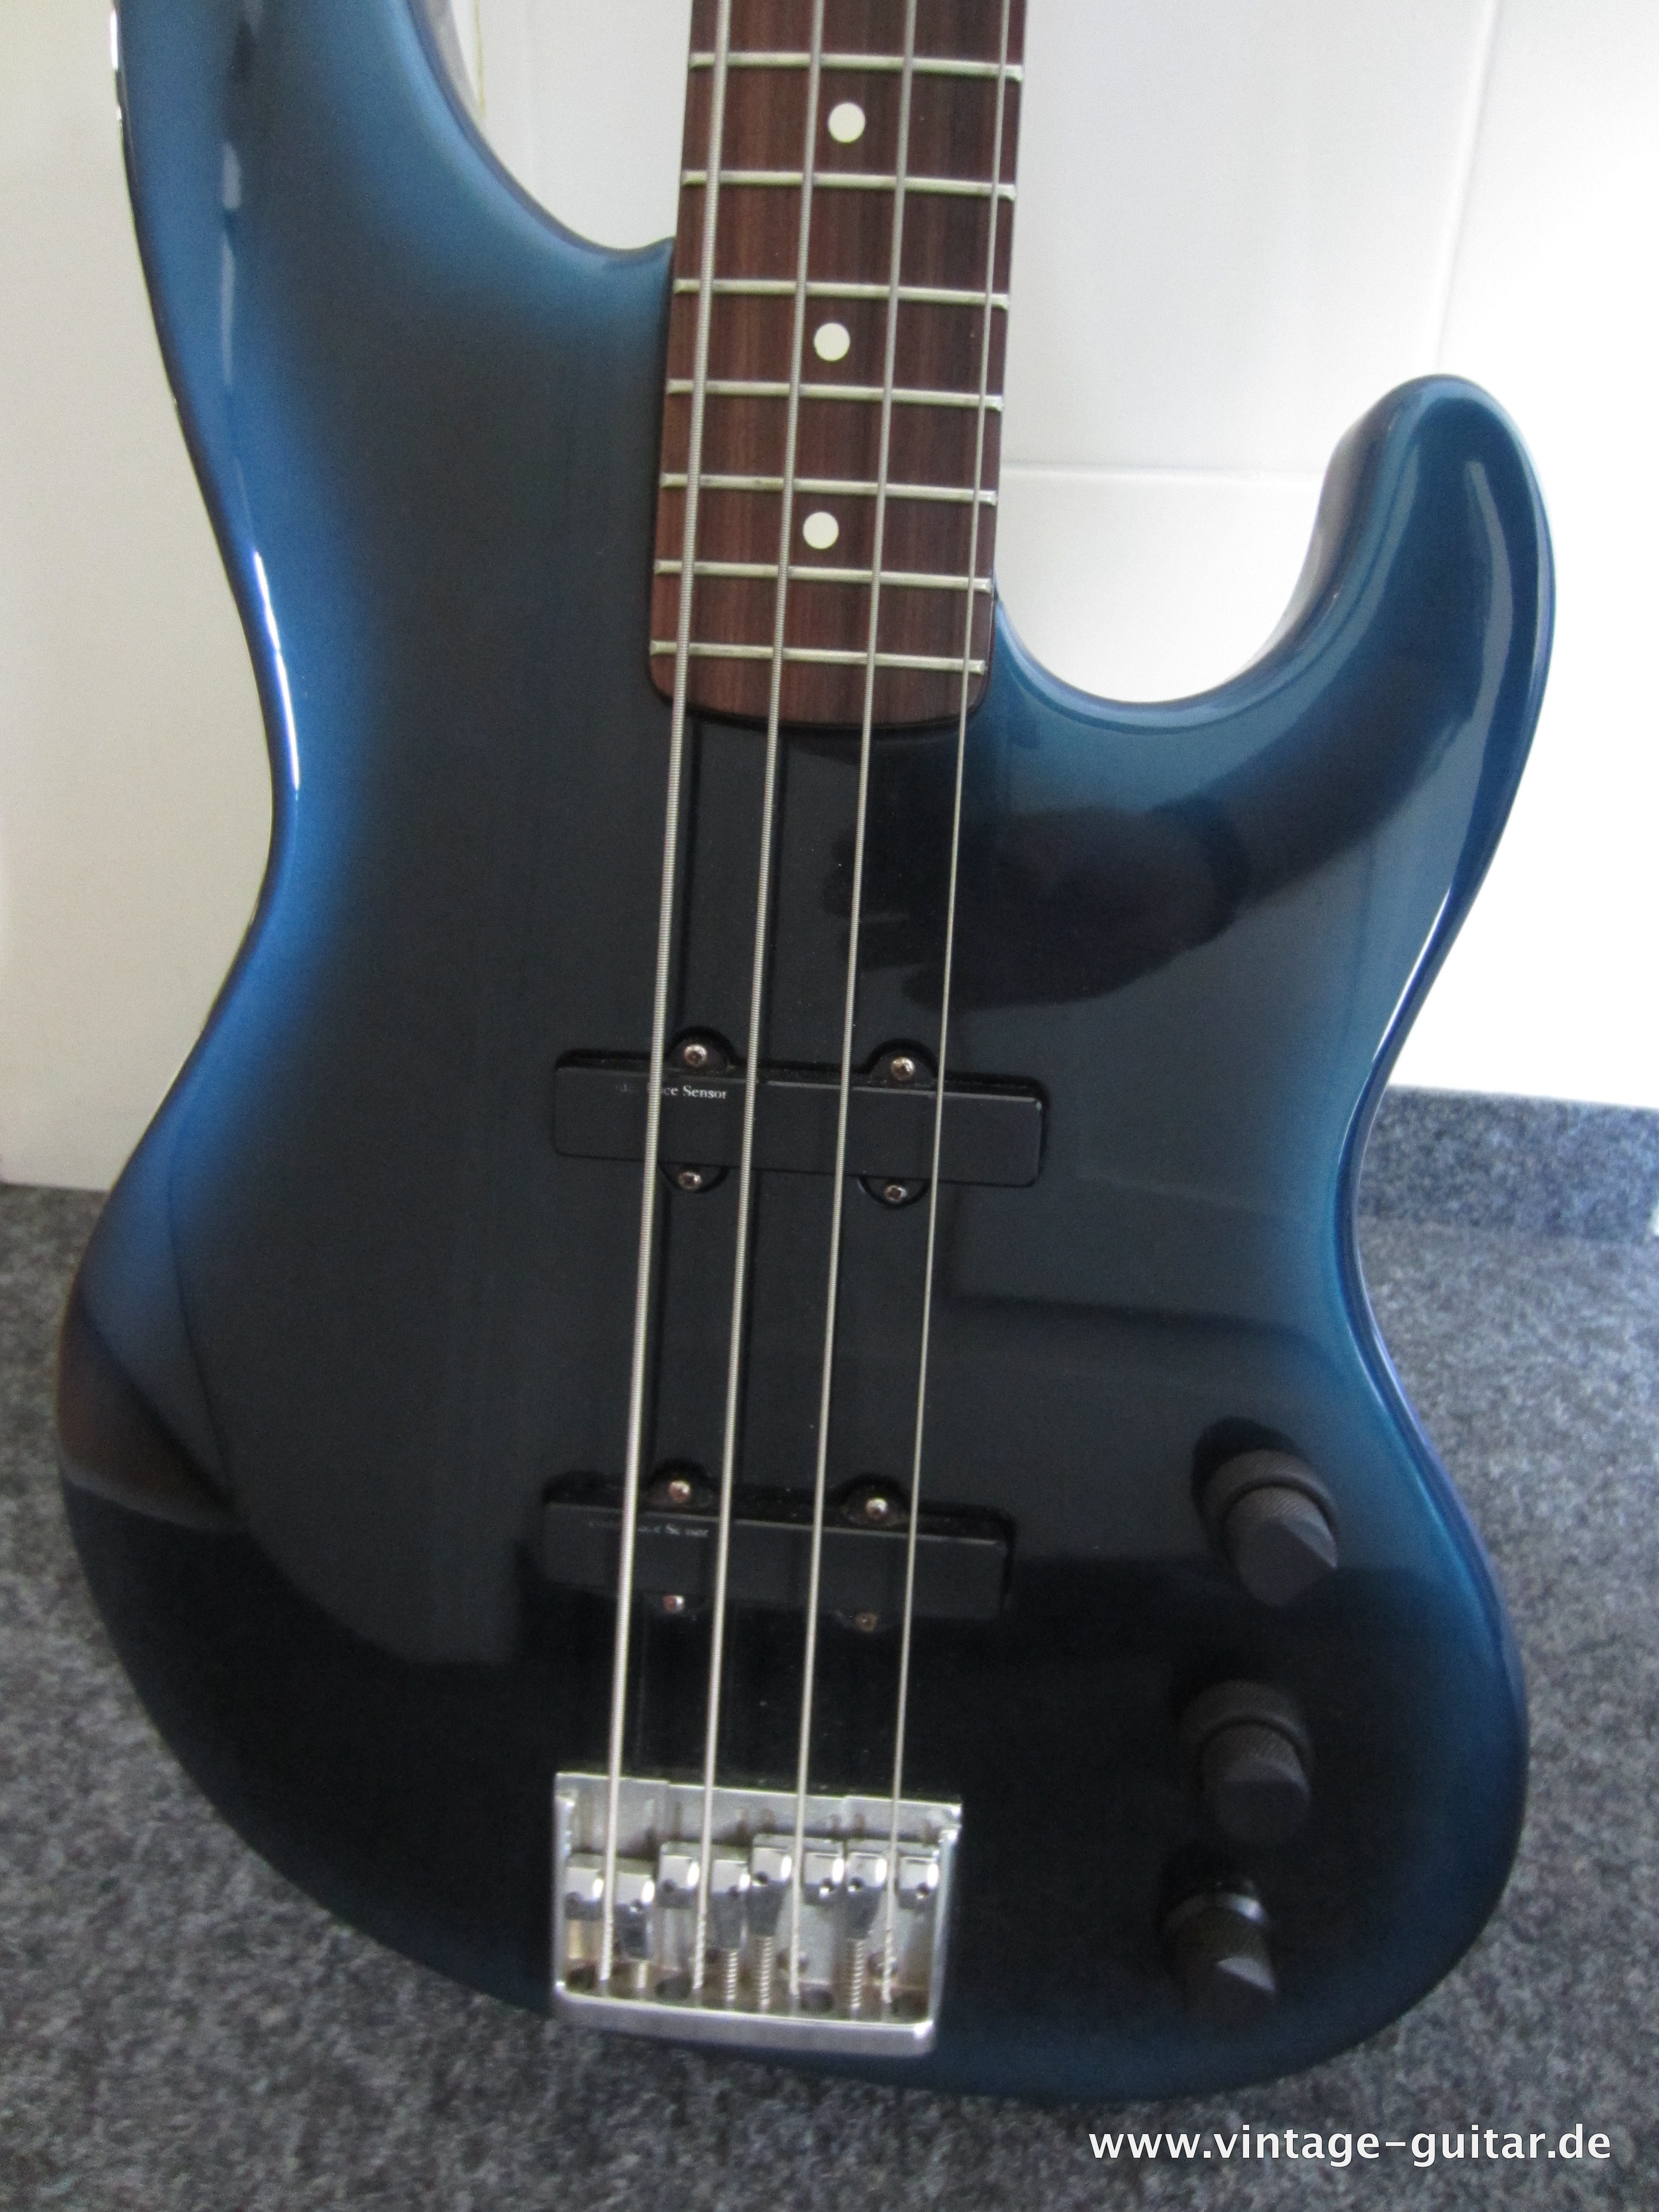 Fender-Jazz-Bass-Special-1990-blue-burst-005.jpg